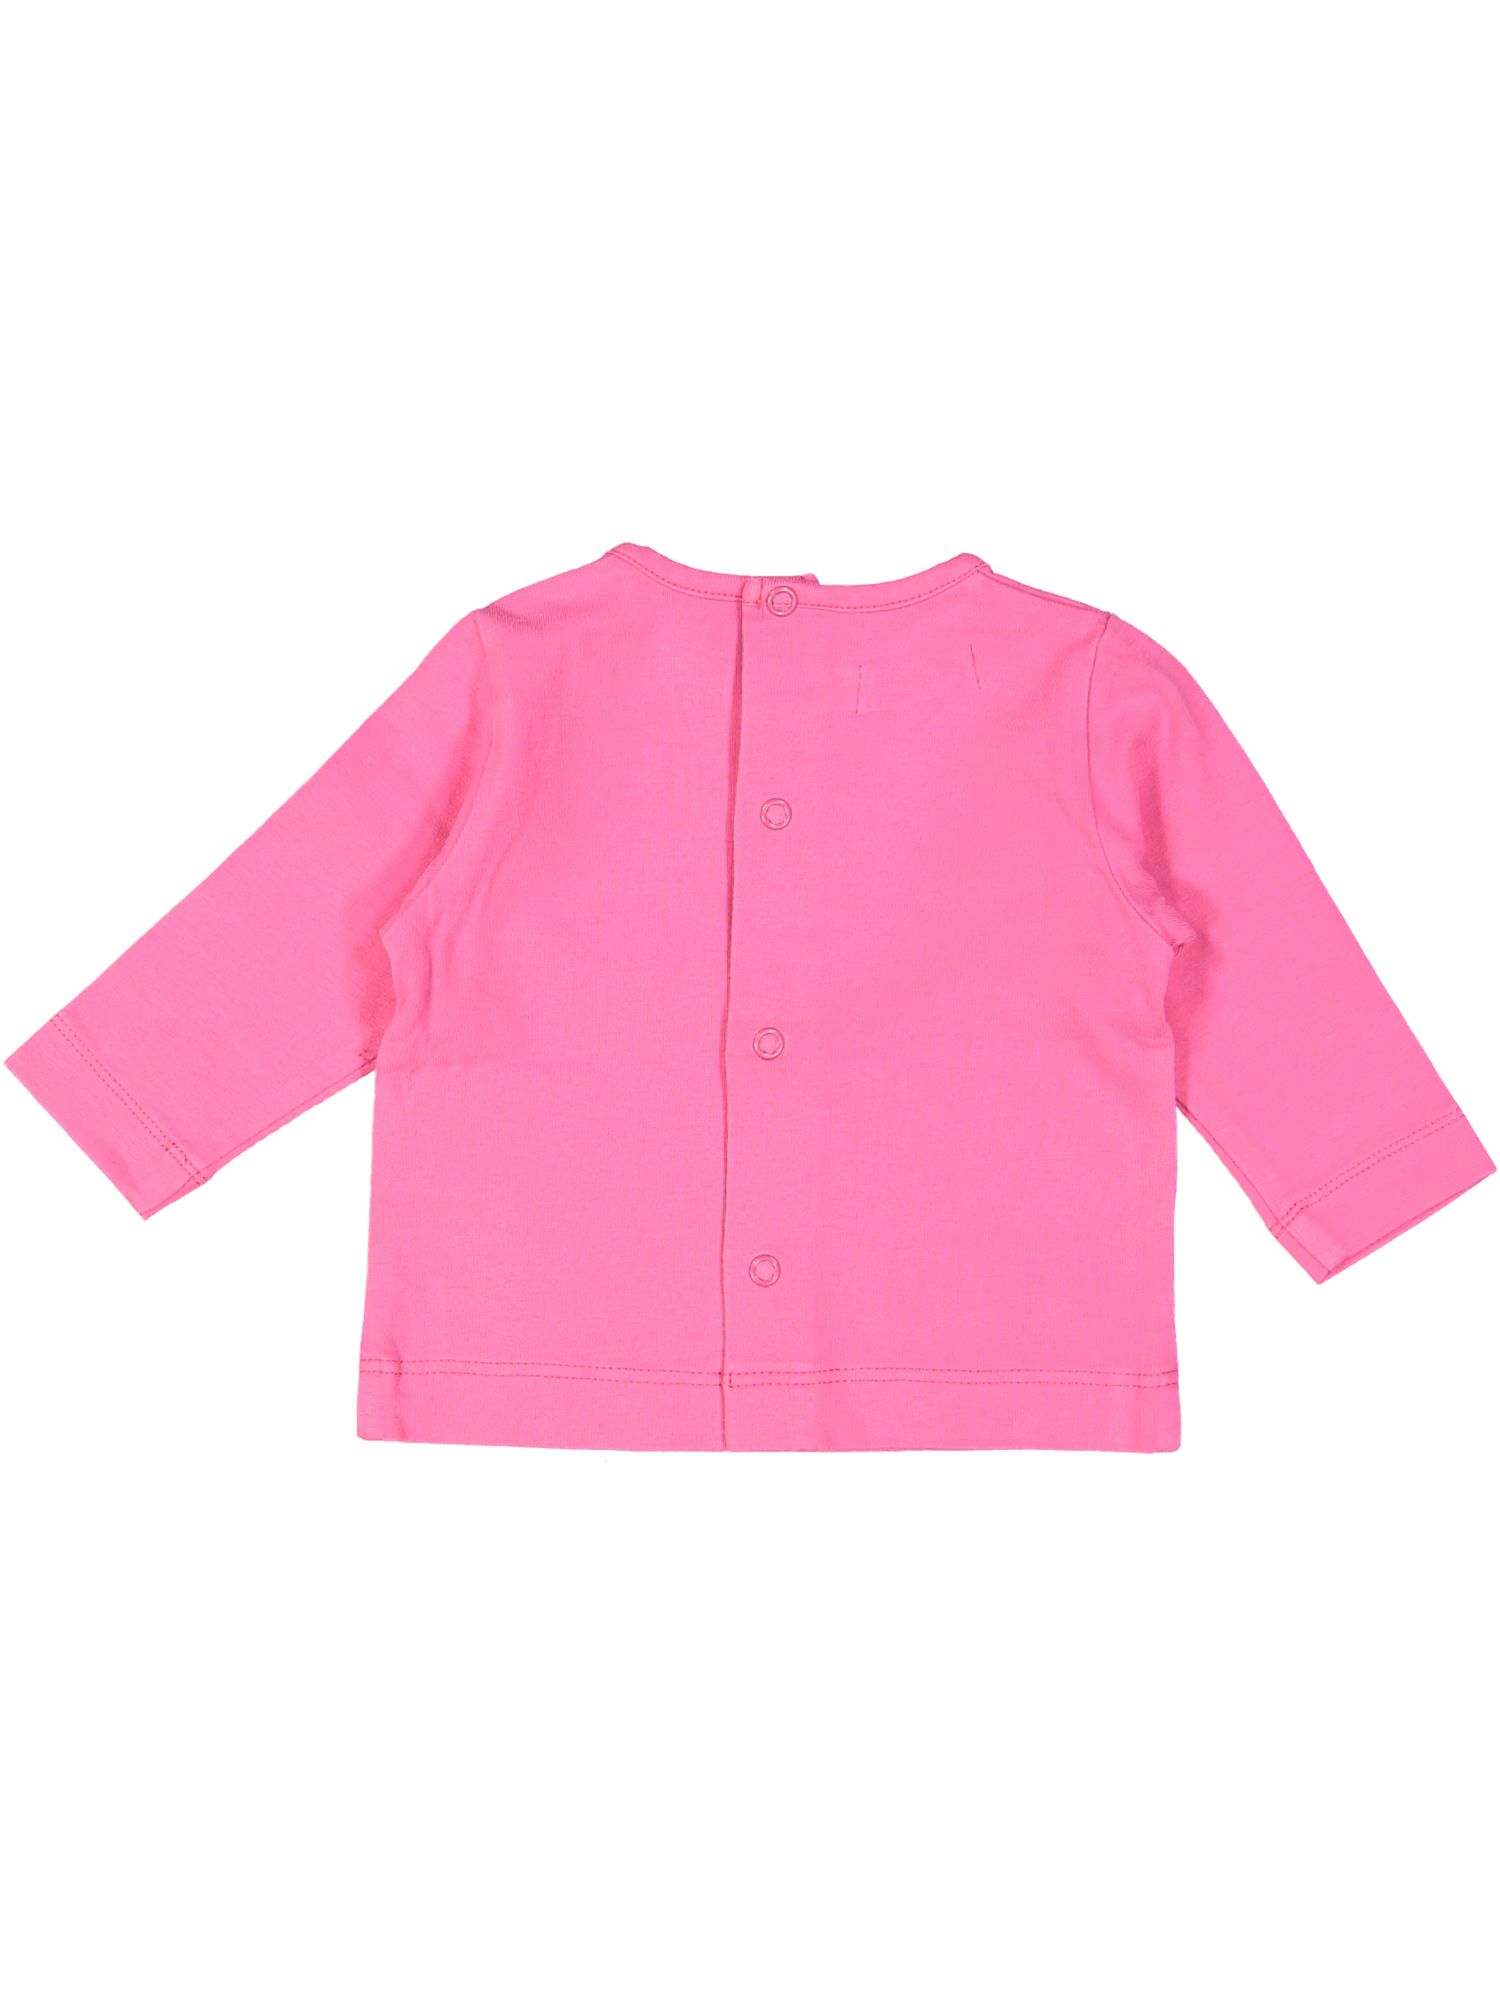 t-shirt roze bird 01m